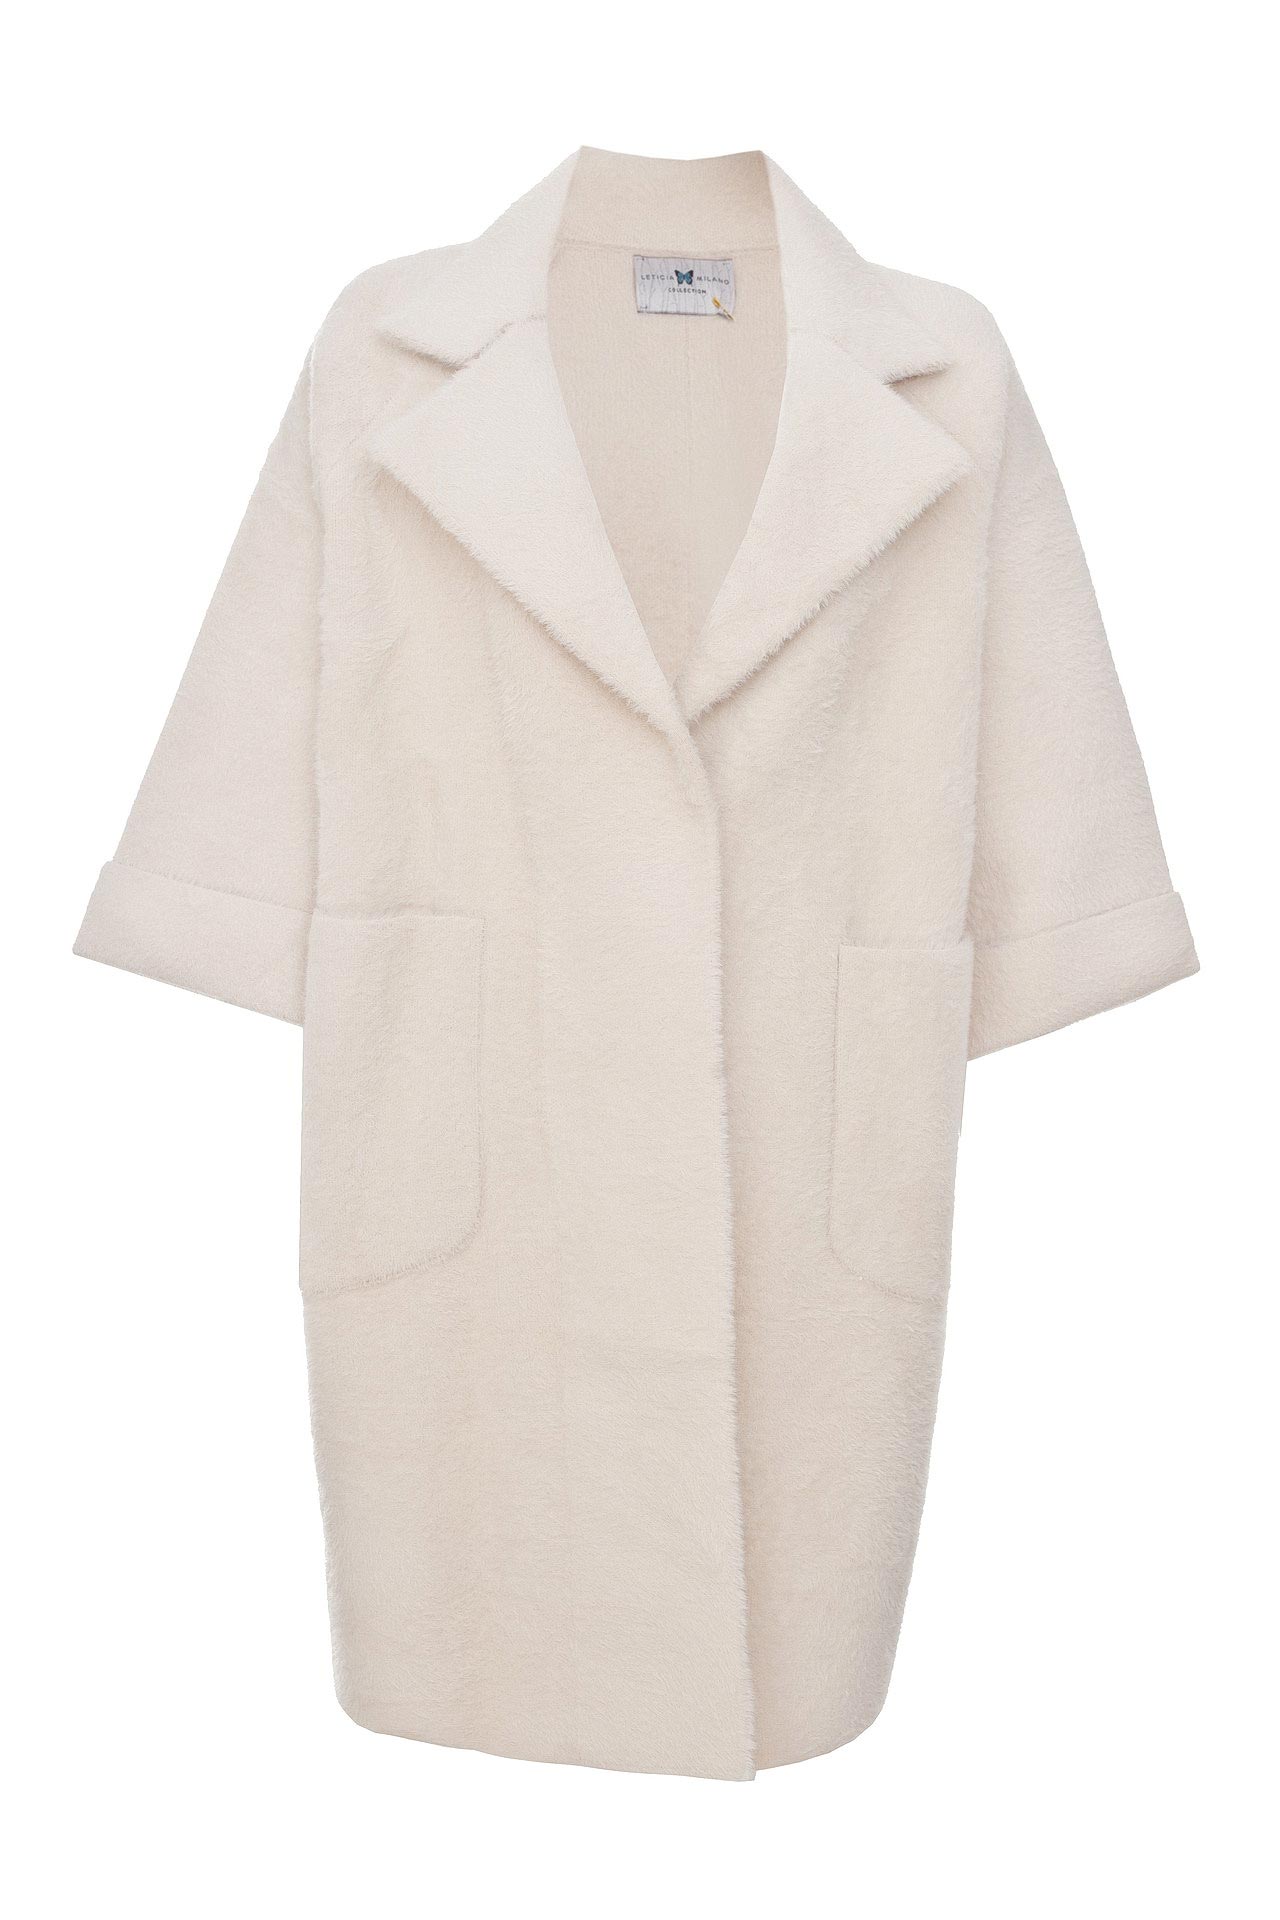 Одежда женская Пальто LETICIA MILANO (FB447W1/18.1). Купить за 11900 руб.